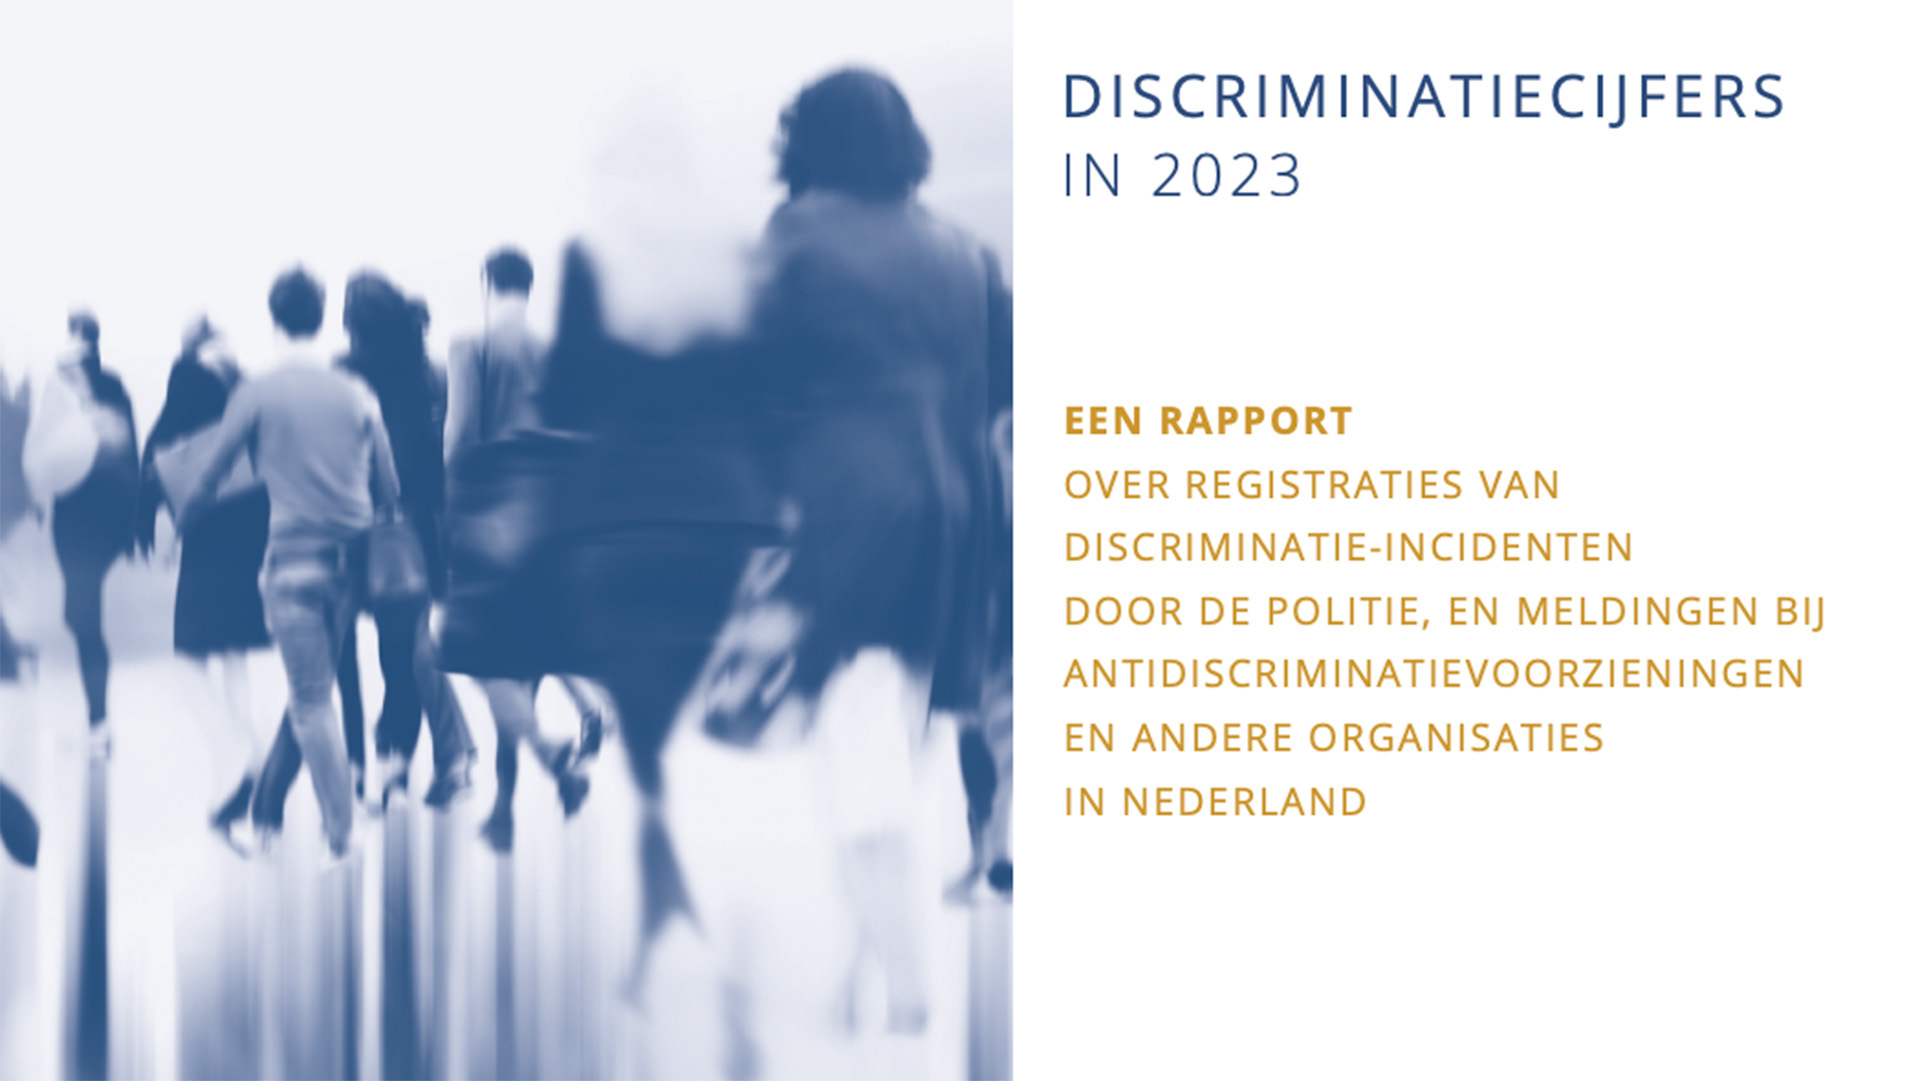 Discriminatiecijfers in 2023, Rapport ocer registraties van discriminatieinciedenten door politie, antidiscriminatievoorzieningen en andere organisaties in Nederland
